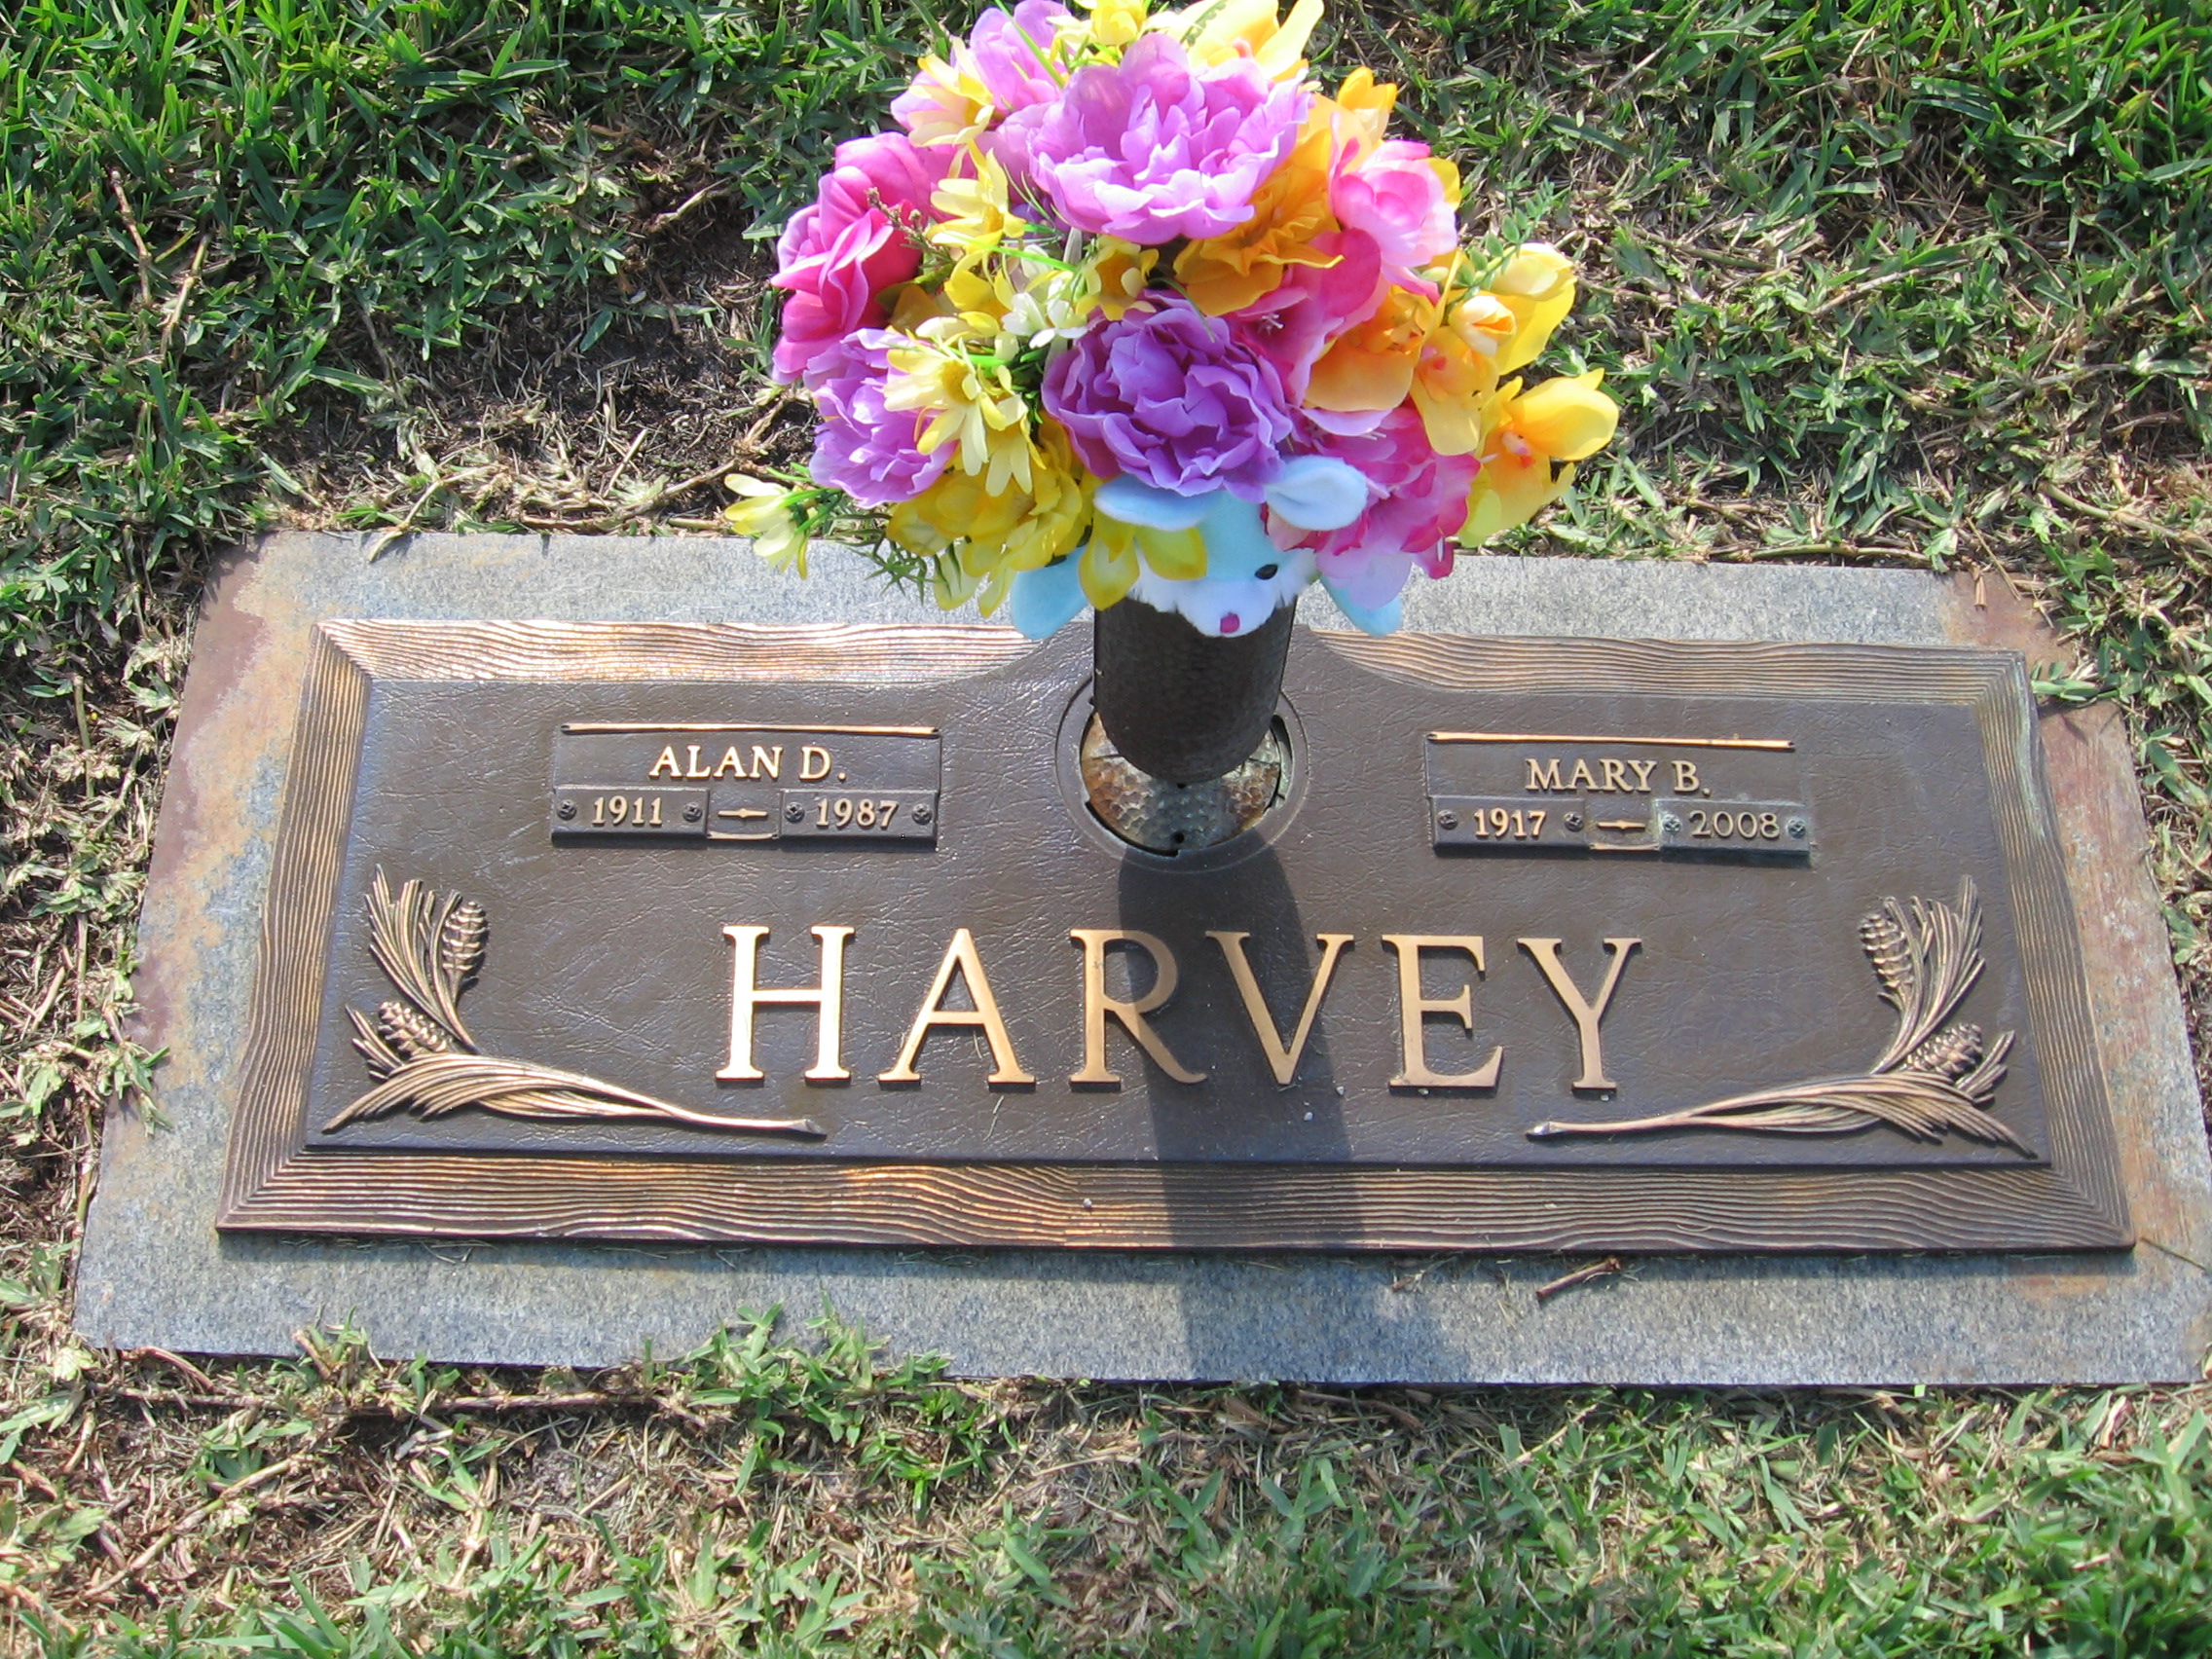 Mary B Harvey